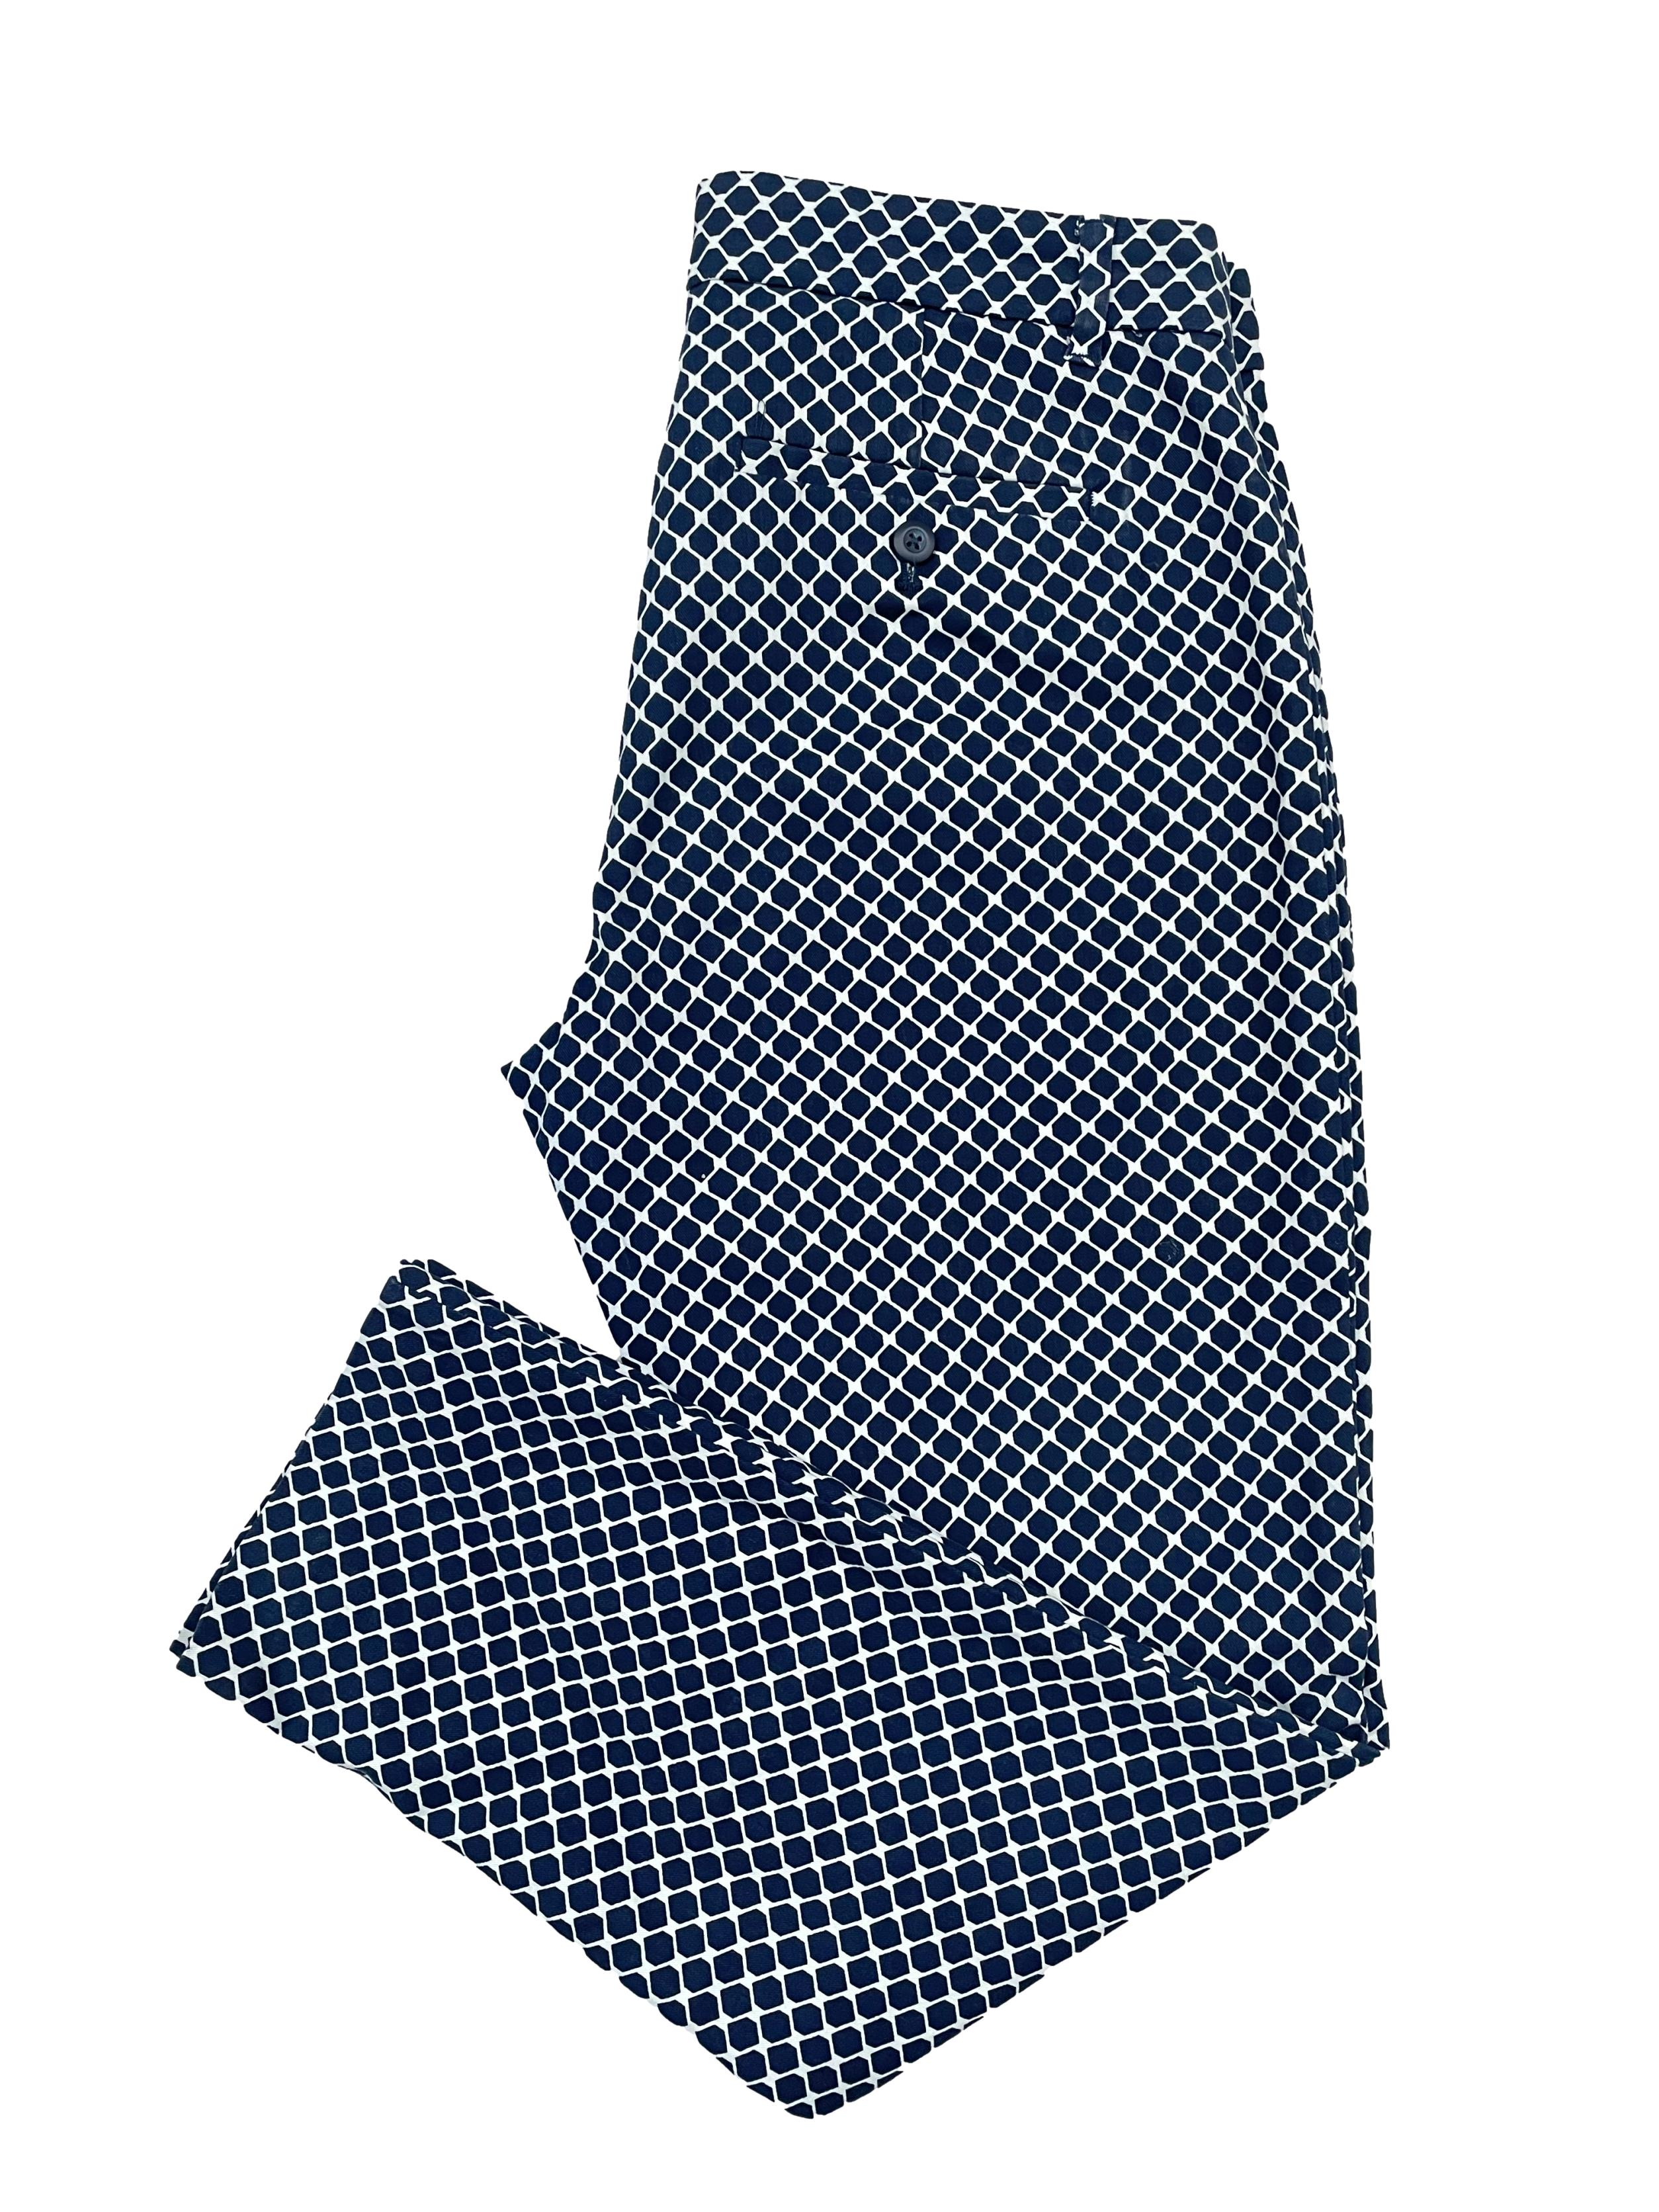 Pantalón de vestir Gap corte slim con estampado de panal en azul y blanco, tela 97%algodon con bolsillos frontales y posteriores. Cintura 82cm,Tiro 23cm, Largo 90cm.